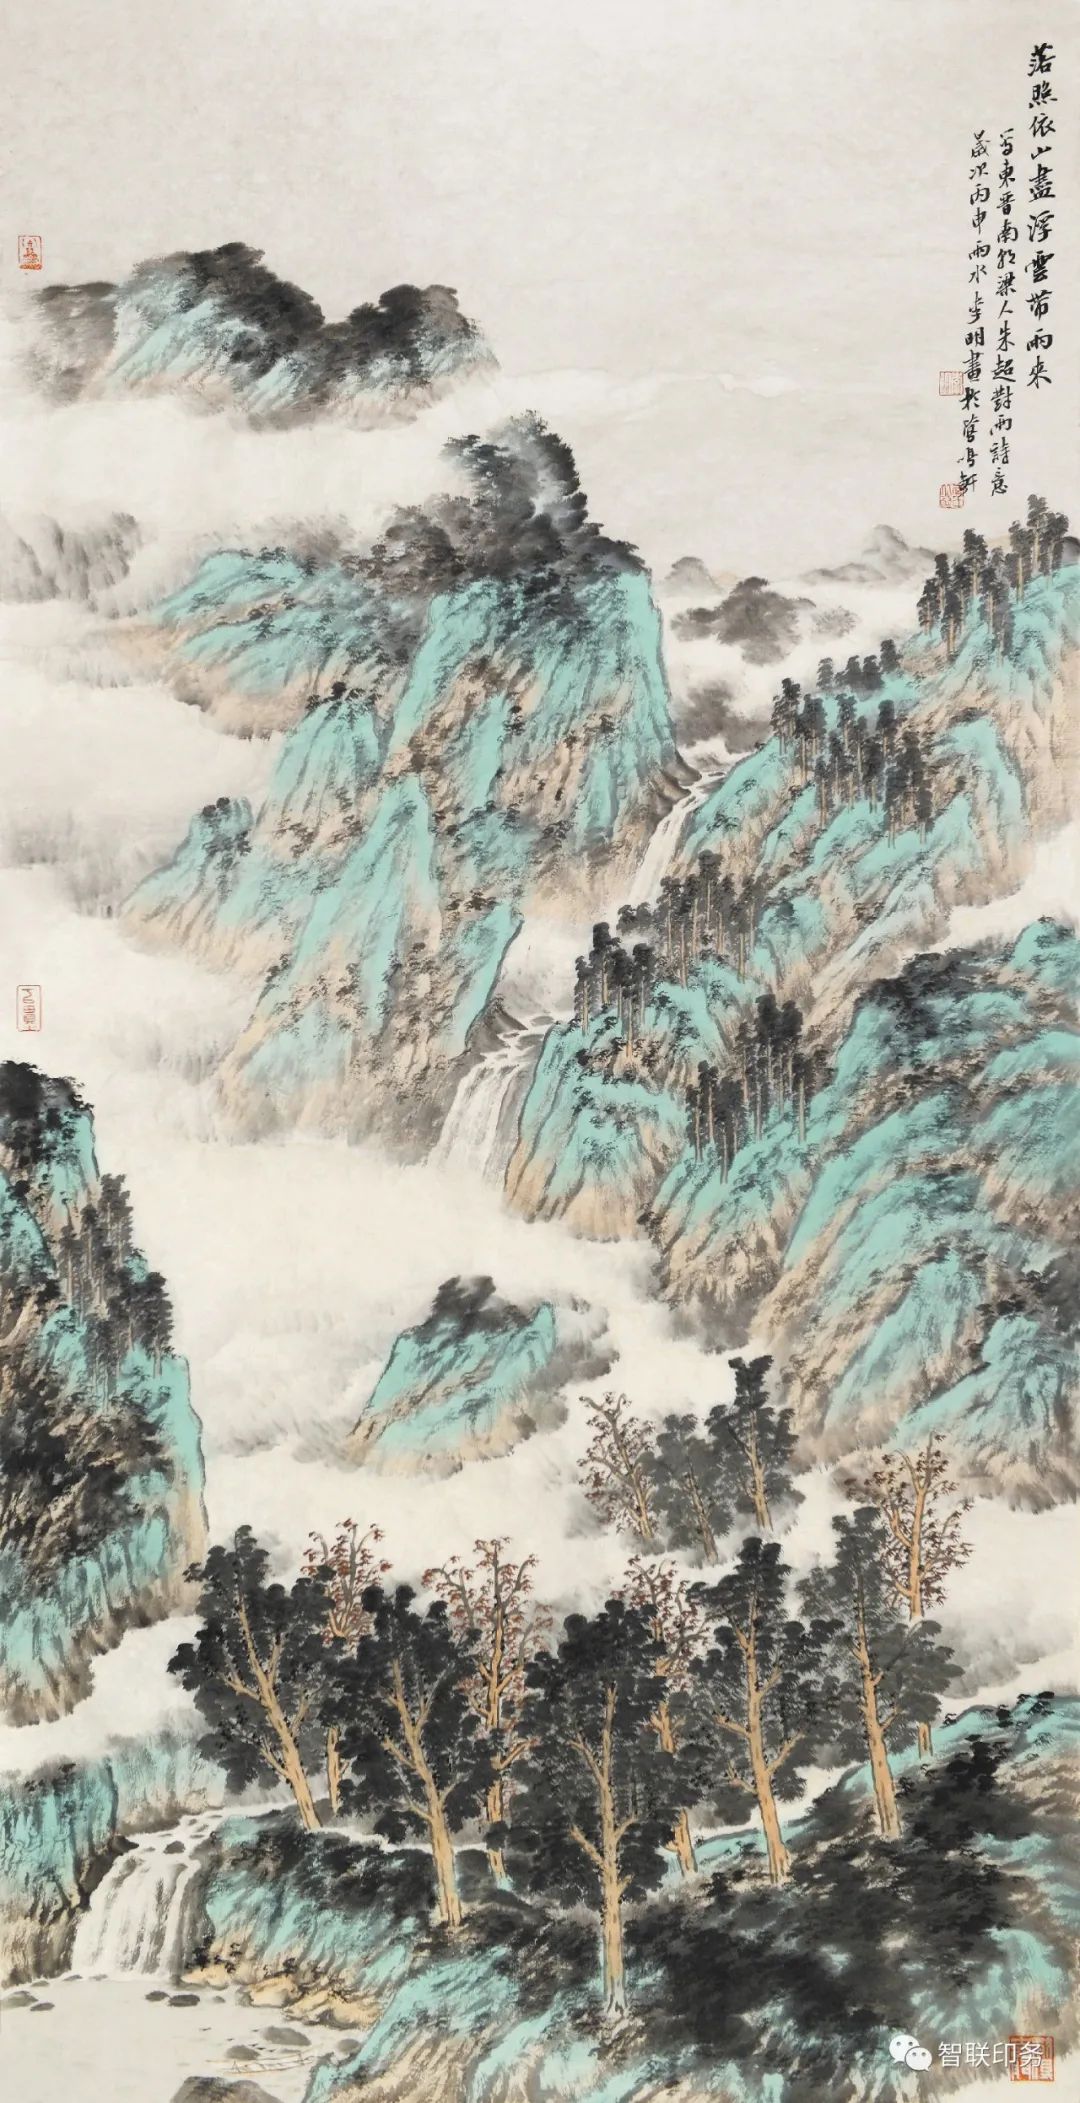 博大深厚 兼容并存——著名画家李明谈青绿山水画创作